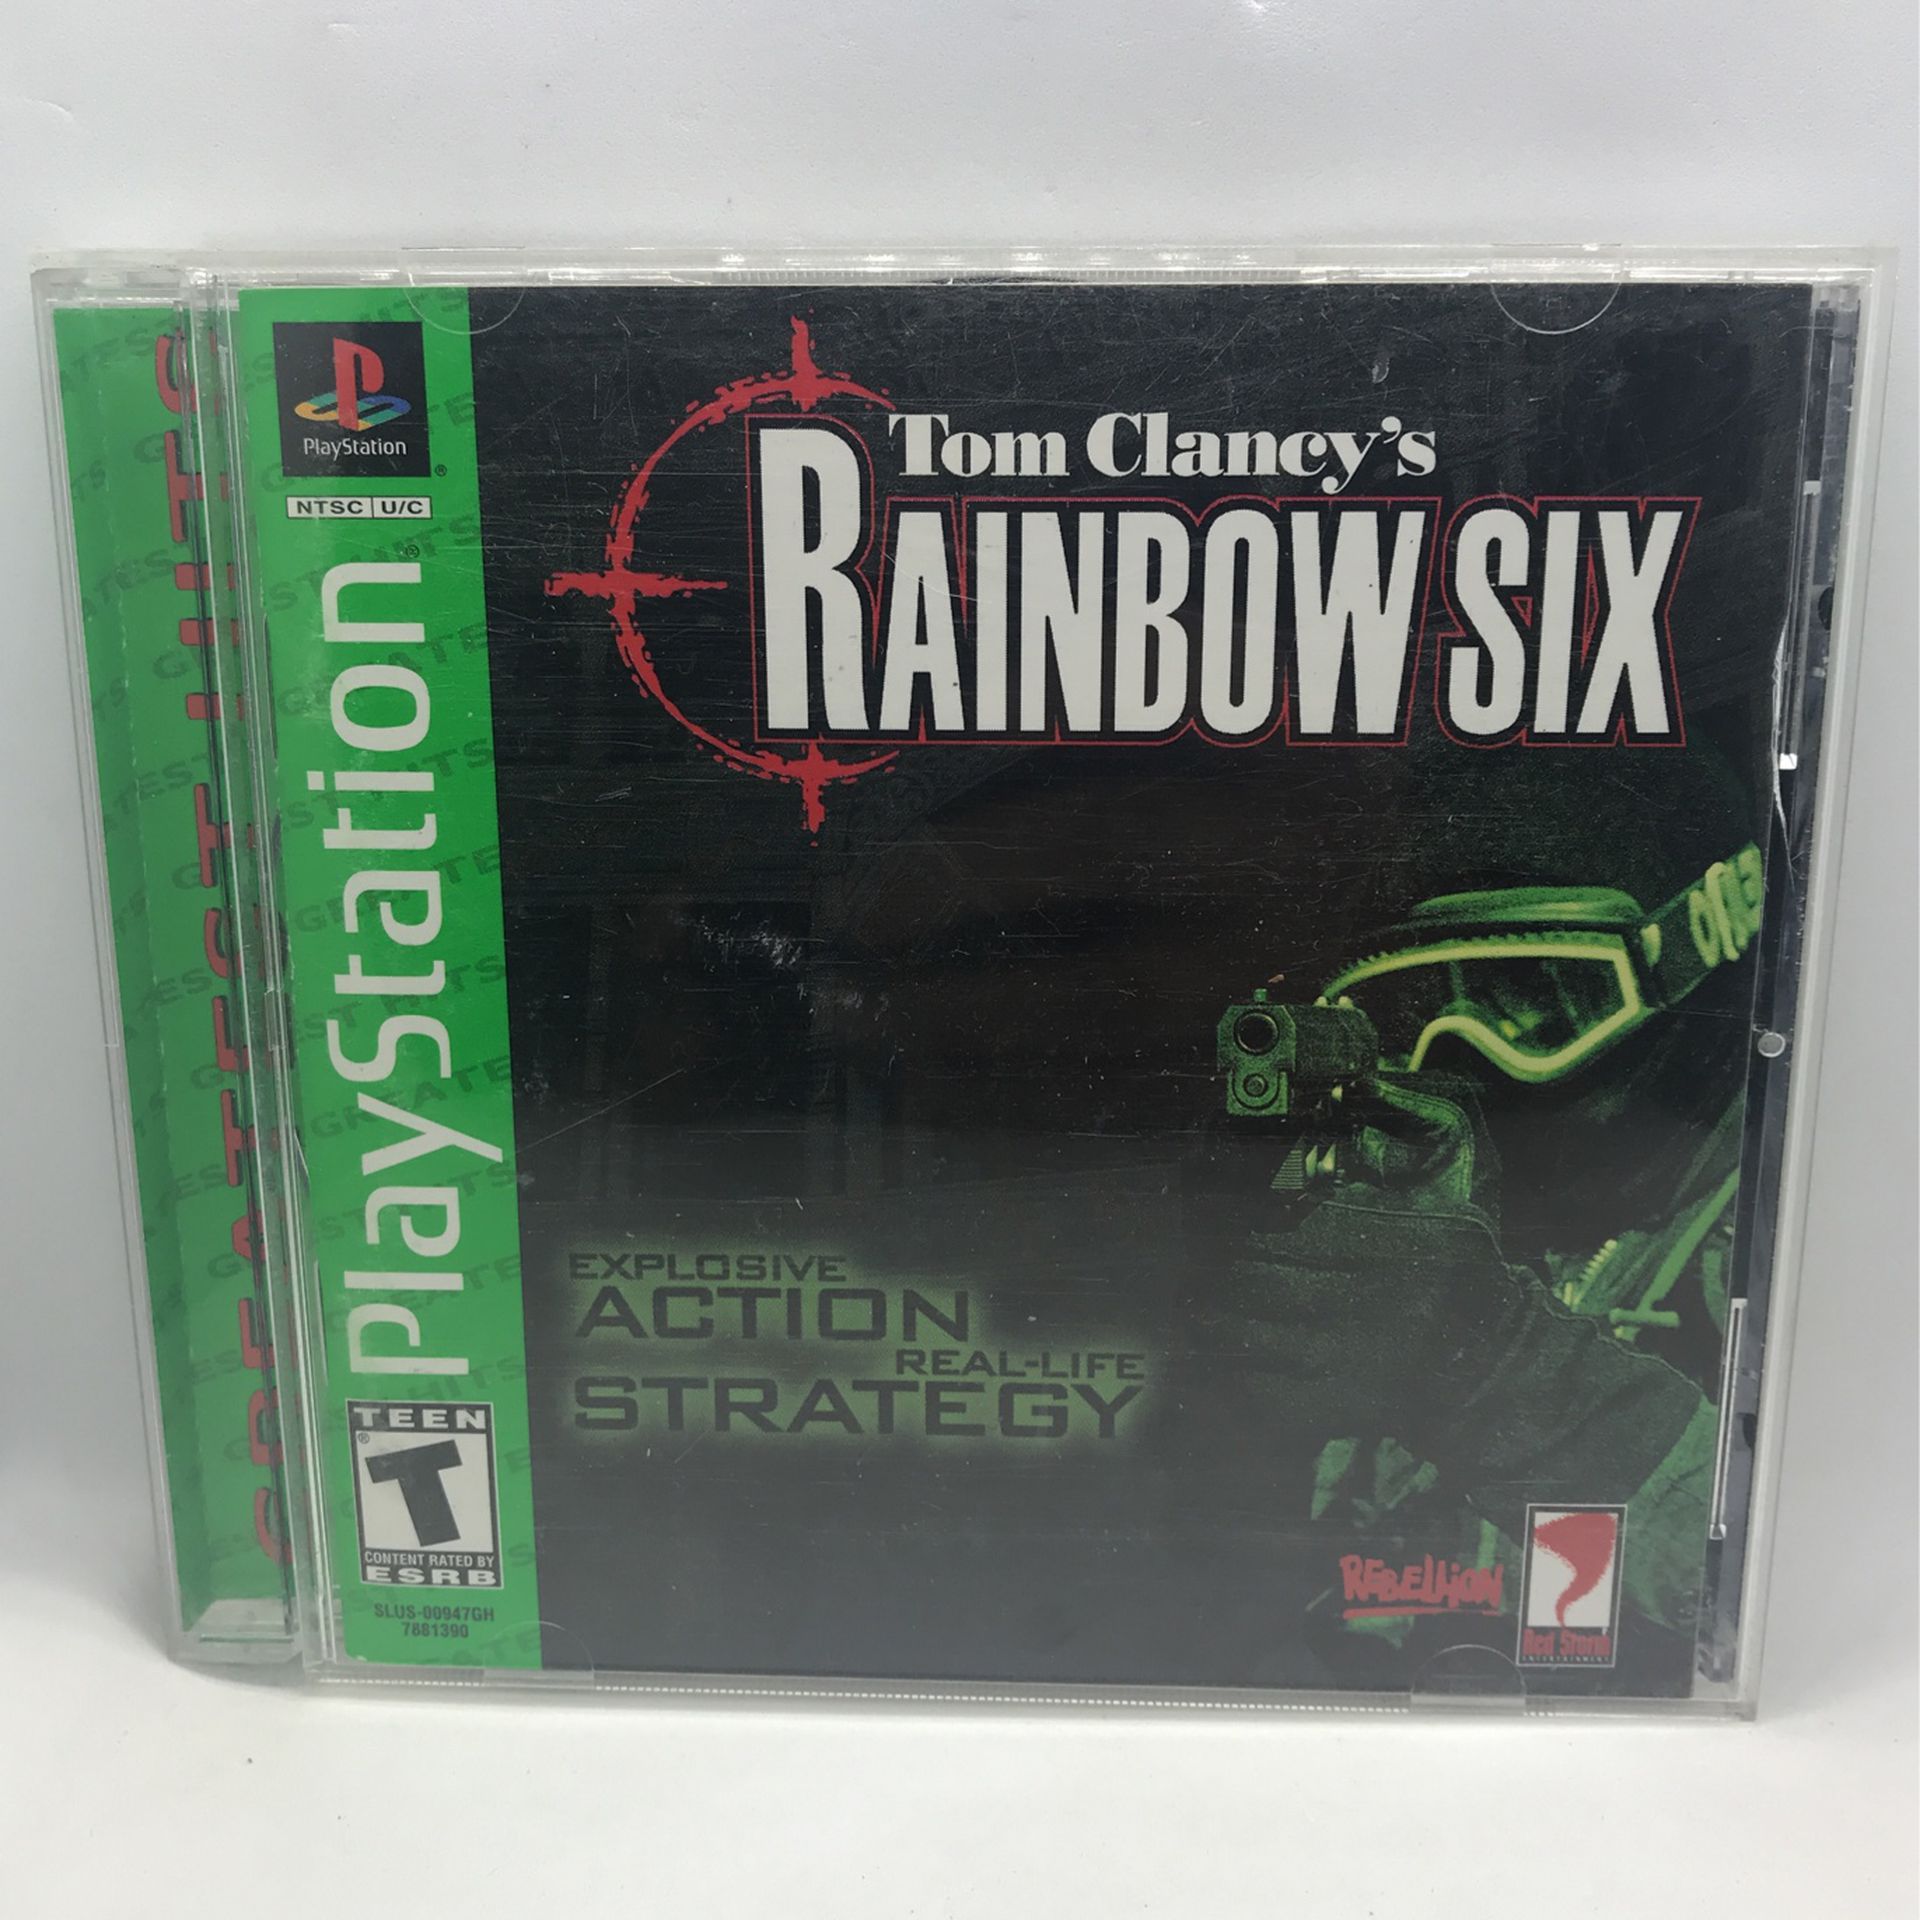 Tom Clancy’s Rainbow Six Sony PlayStation 